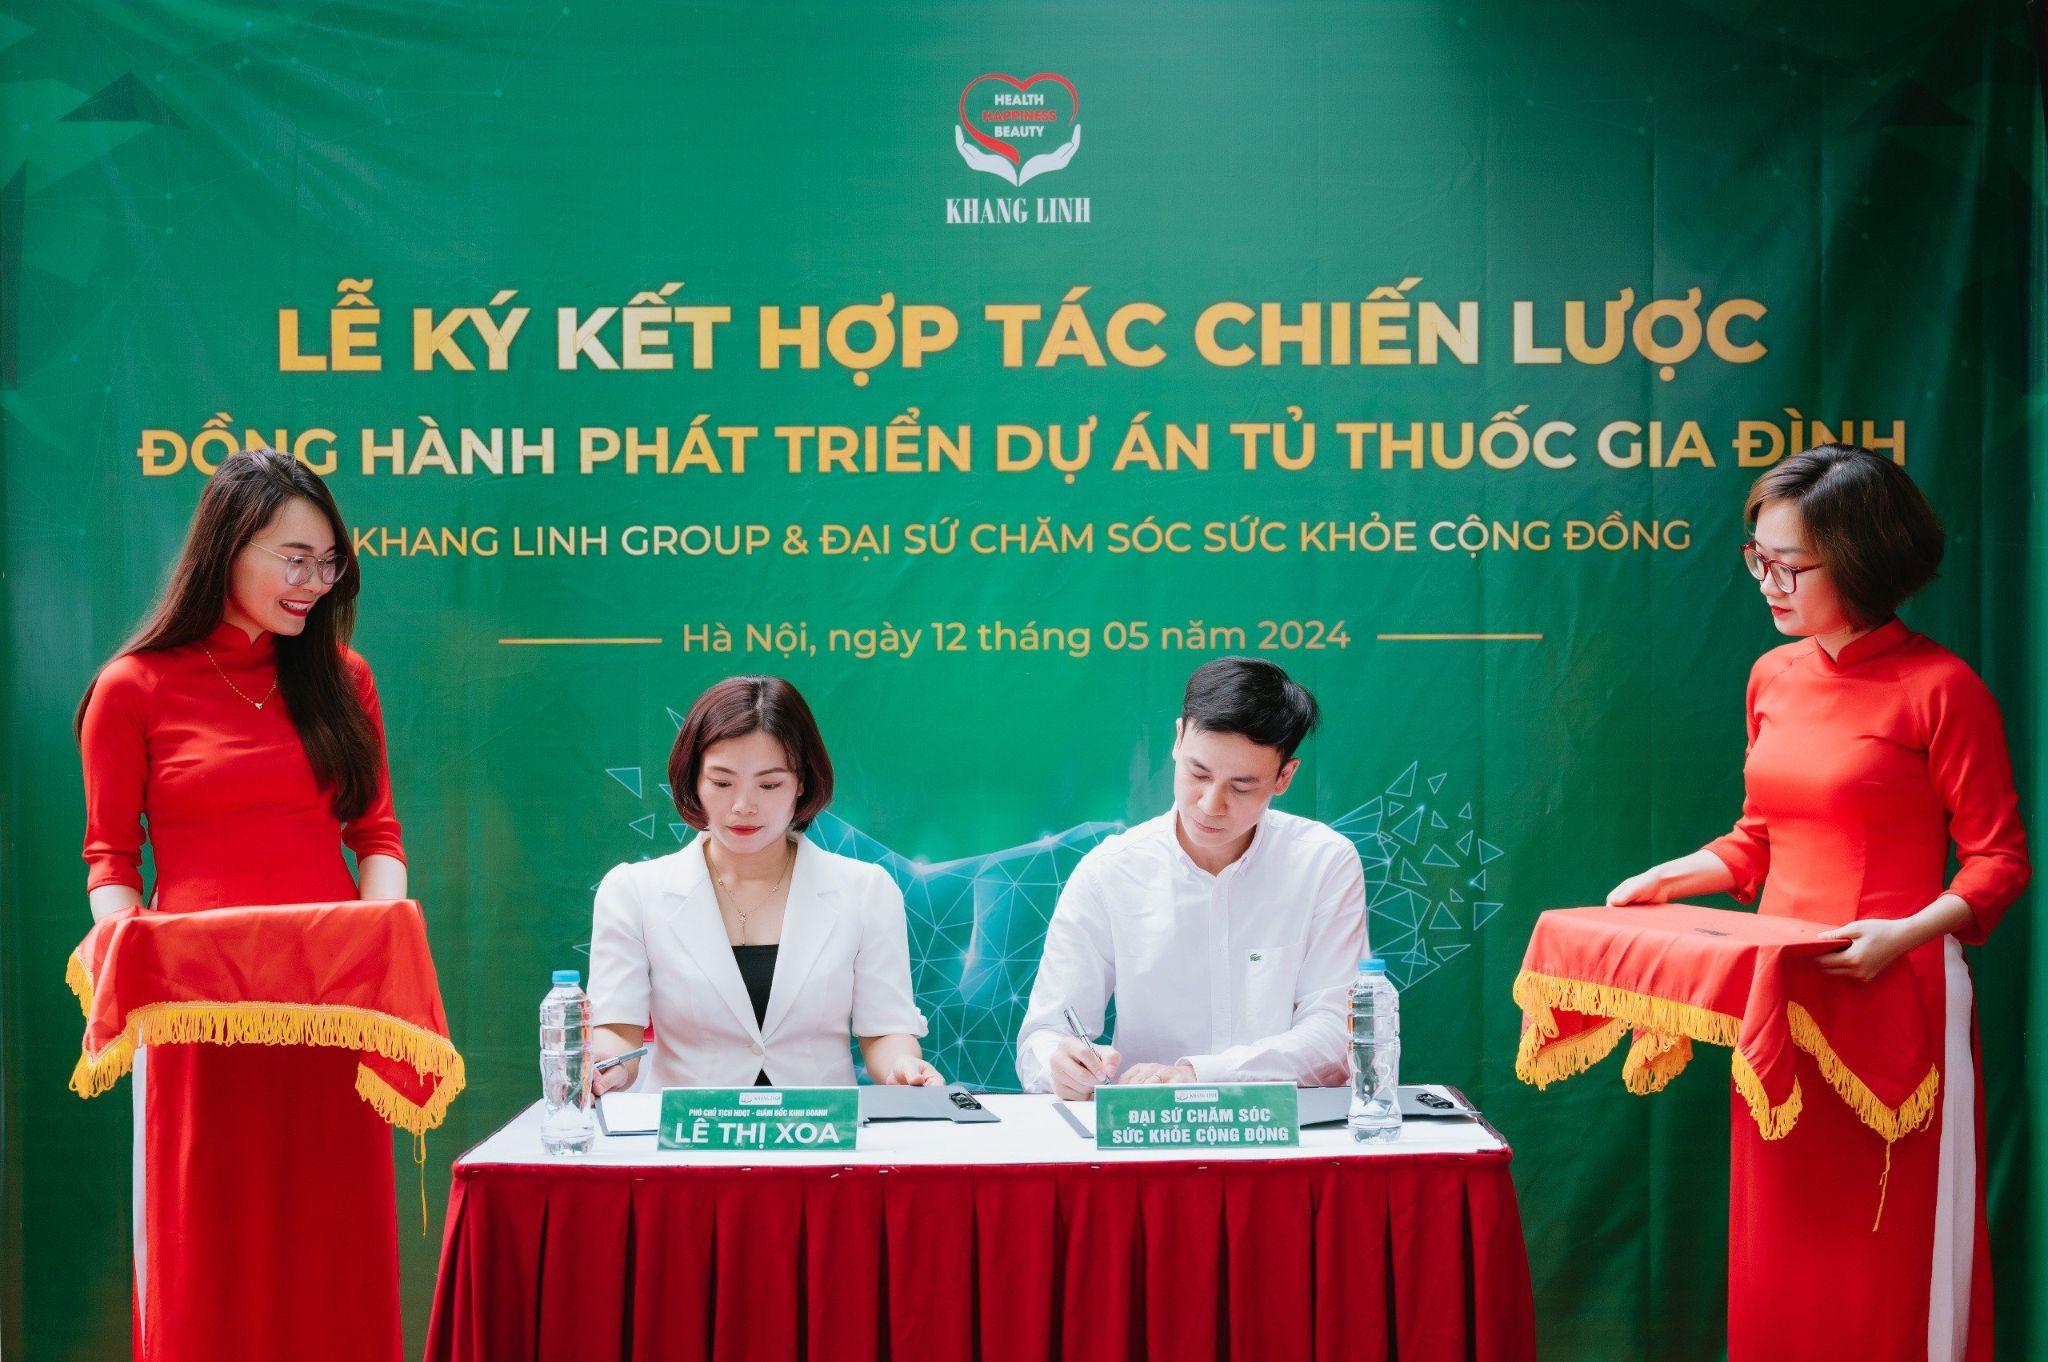 Khang Linh Group khai trương showroom thực phẩm bảo vệ sức khỏe kế thừa tinh hoa y học cổ truyền - 2